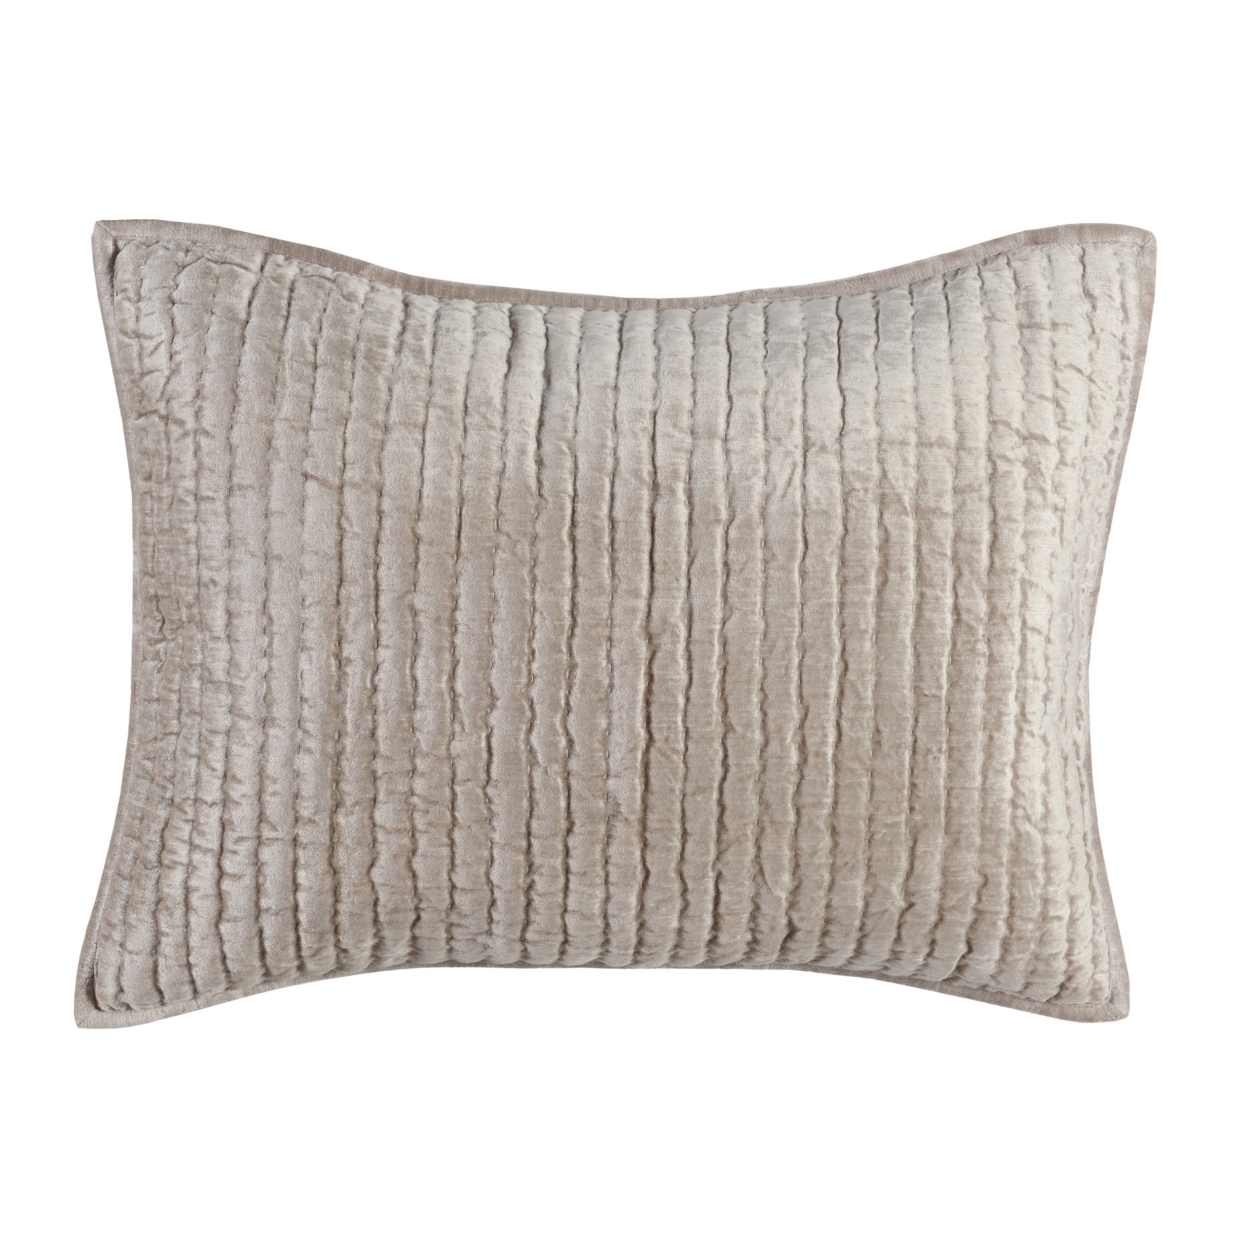 Lipa 20 X 26 Hand Stitched Standard Pillow Sham, Velvet, Quilted, Beige- Saltoro Sherpi